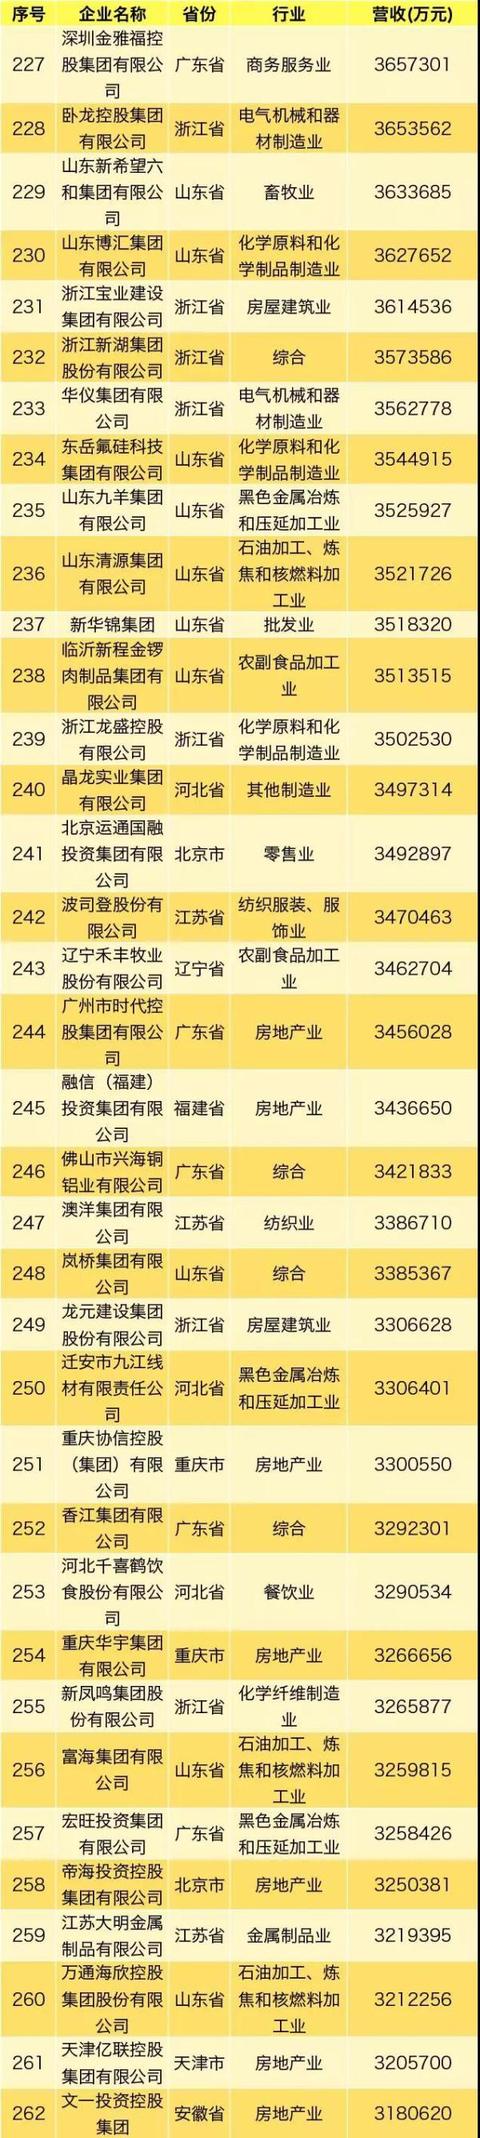 2019中国民营企业500强完整榜单发布 华为蝉联冠军